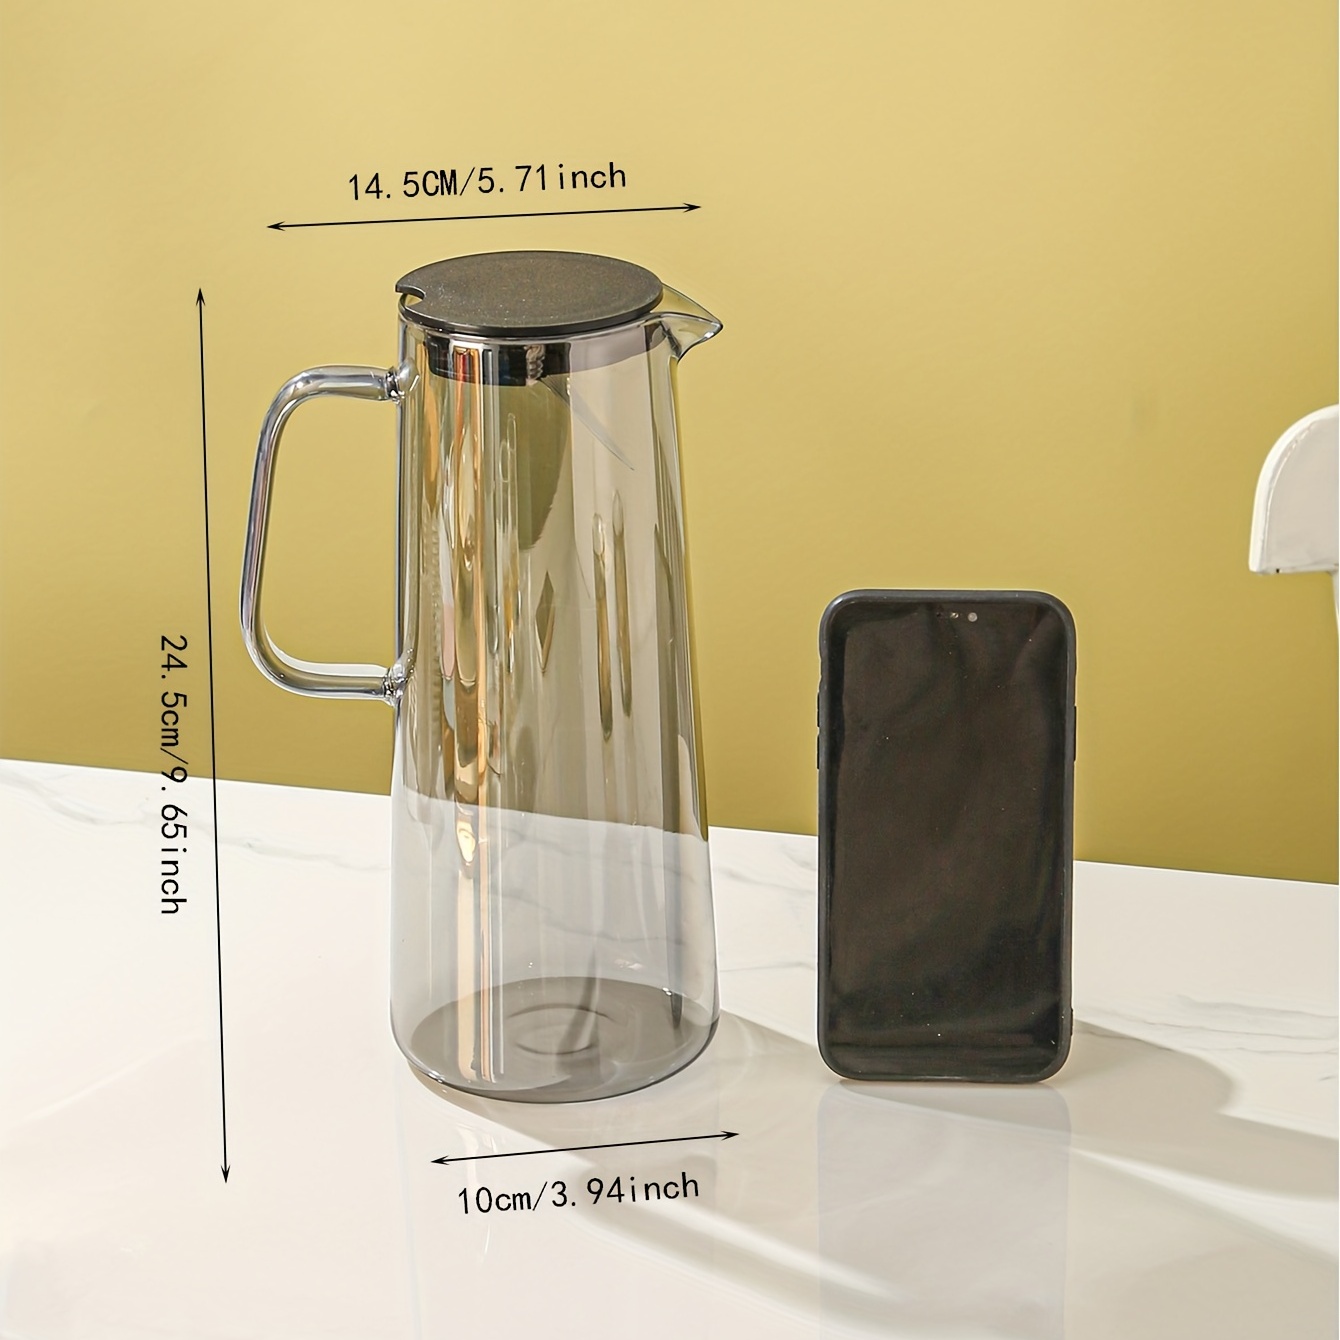  Jarra de vidrio de 2.5 litros con tapa, jarras de té helado de  3/5 galones, jarra de agua de vidrio de 2.6 cuartos de galón con mango para  hervir líquido, té